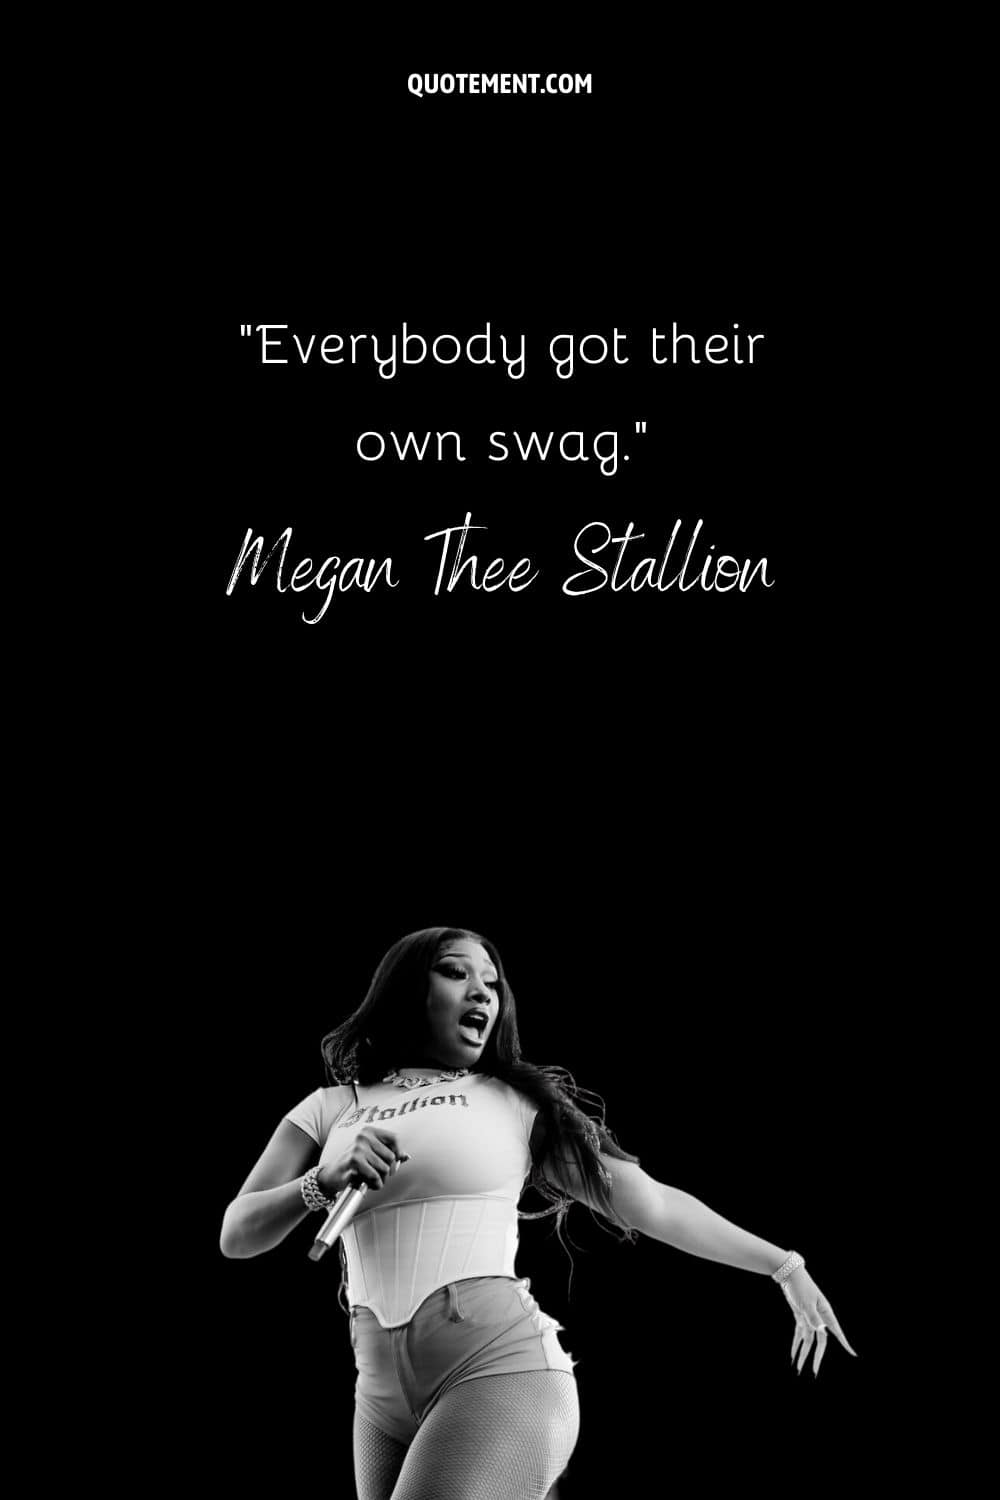 “Everybody got their own swag.” — Megan Thee Stallion